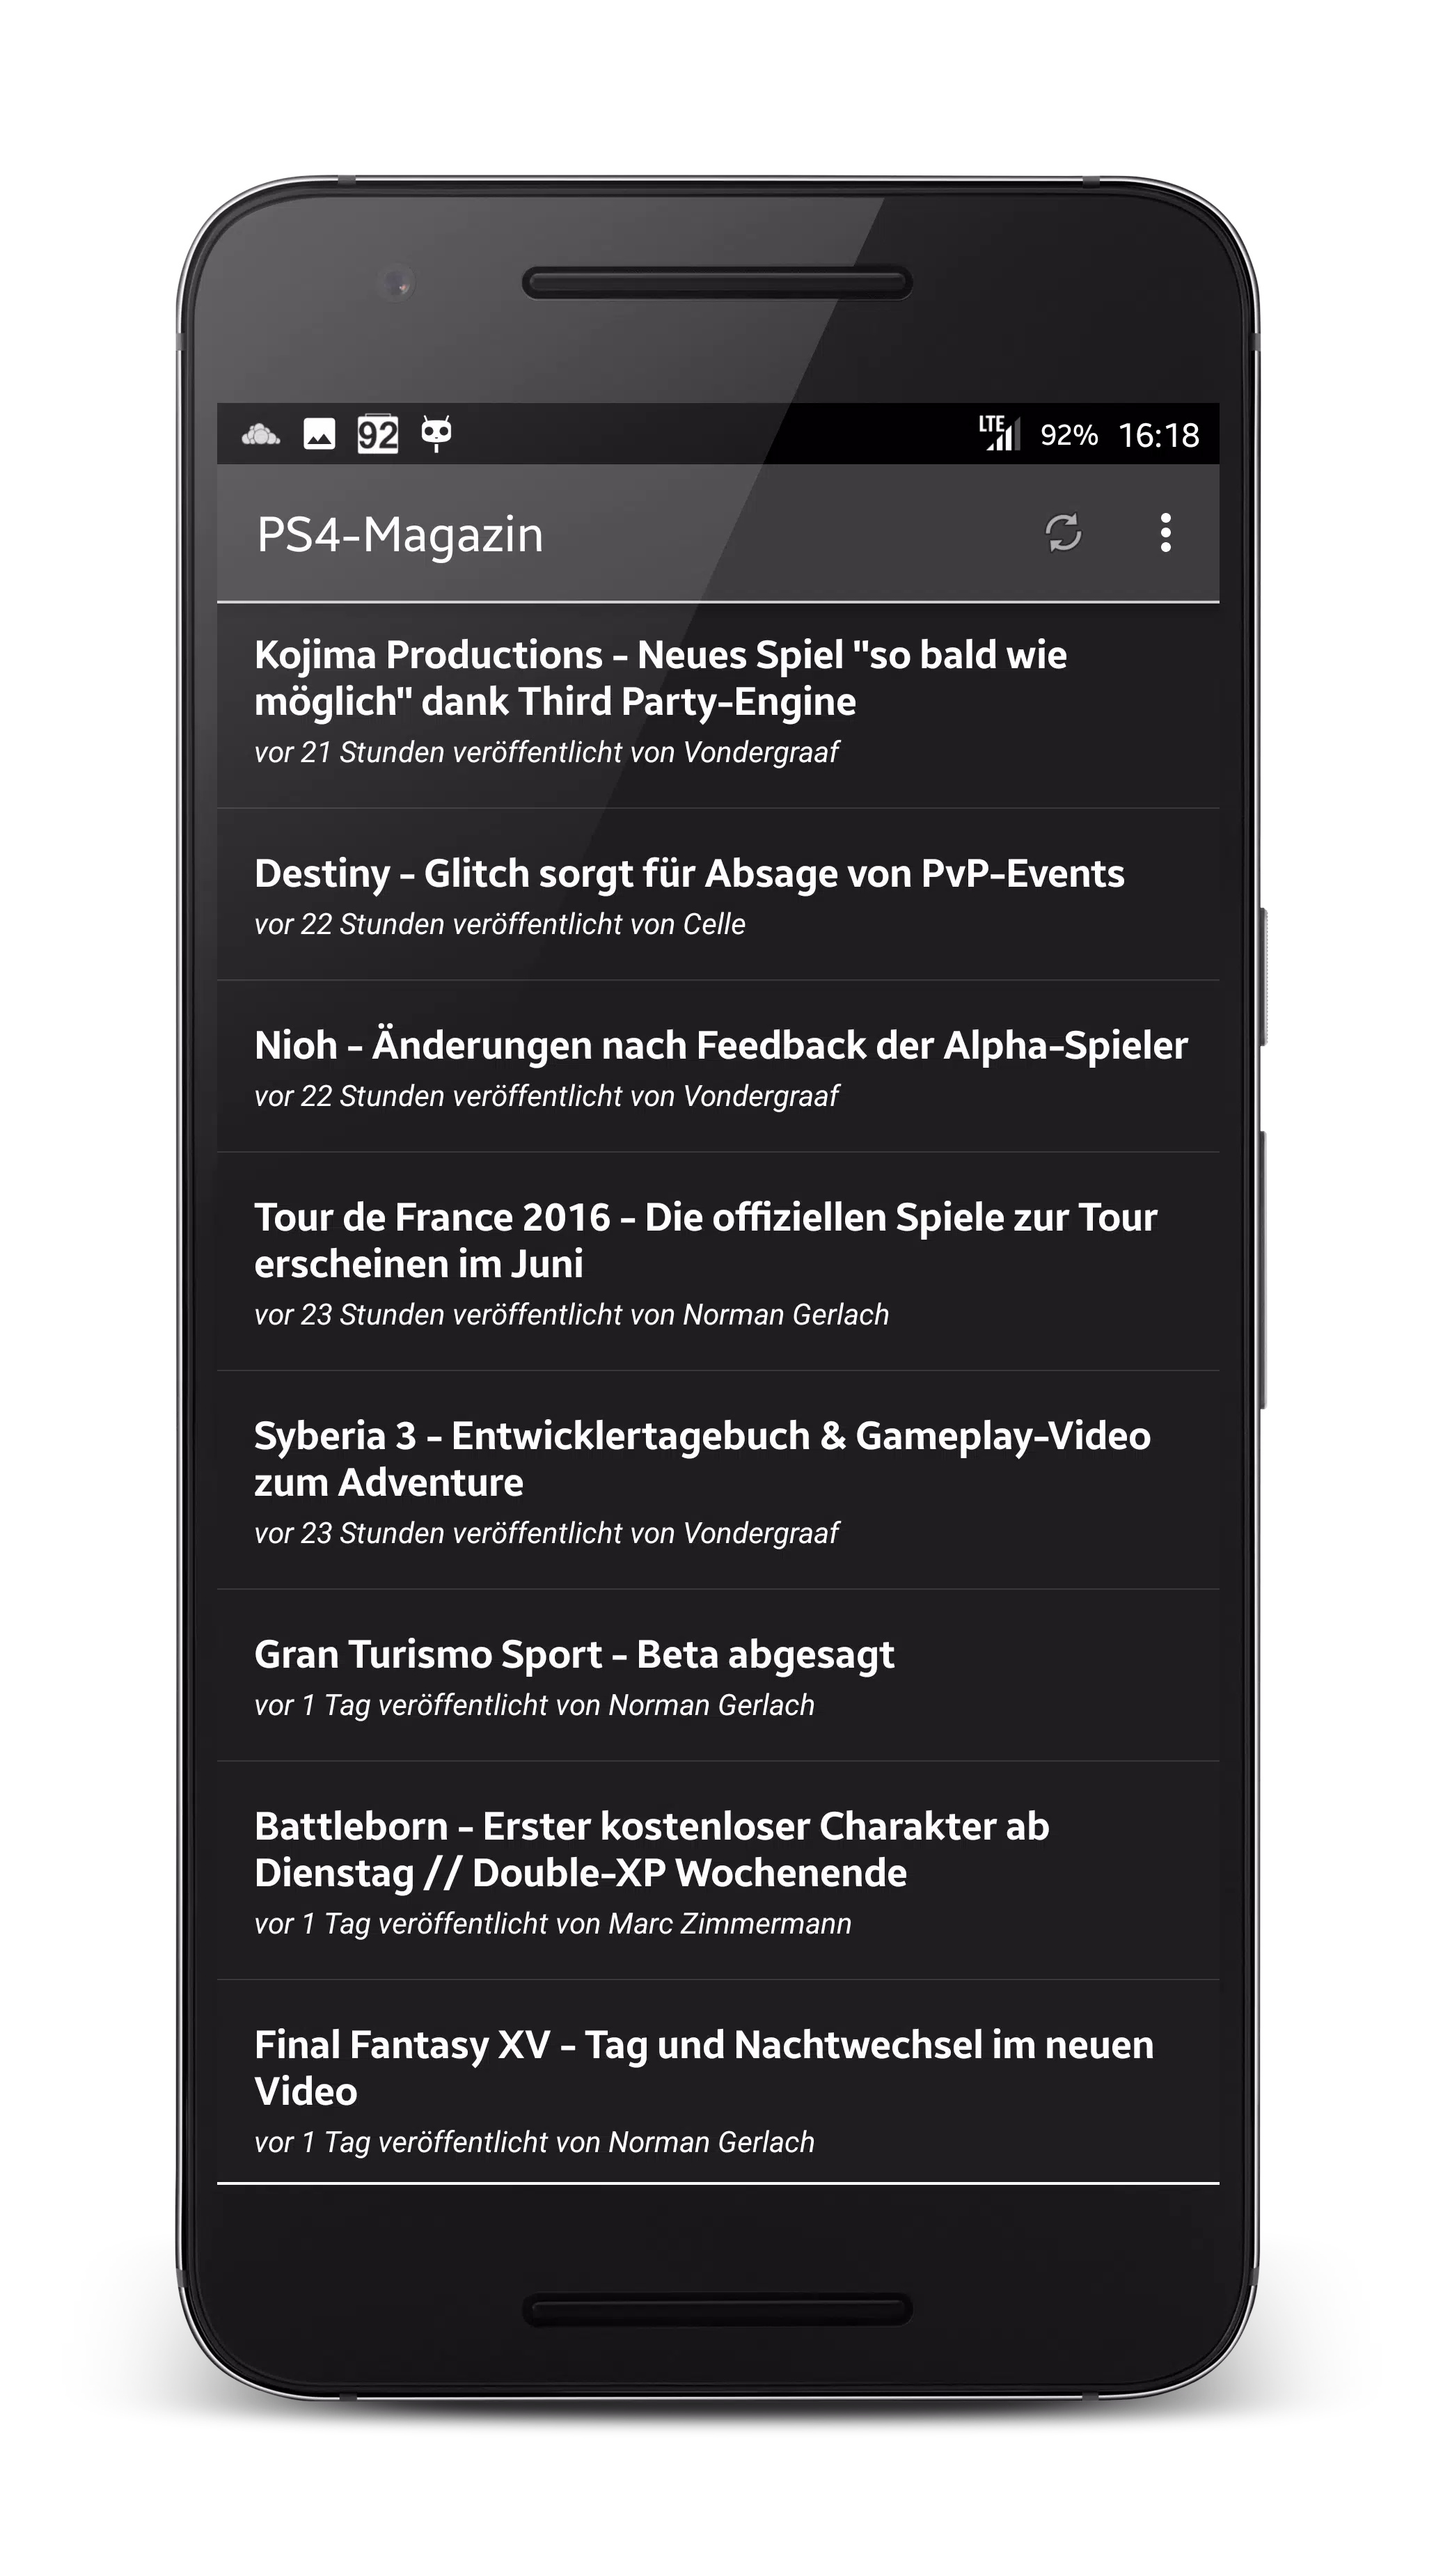 PS4-Magazin.de News&Community APK für Android herunterladen